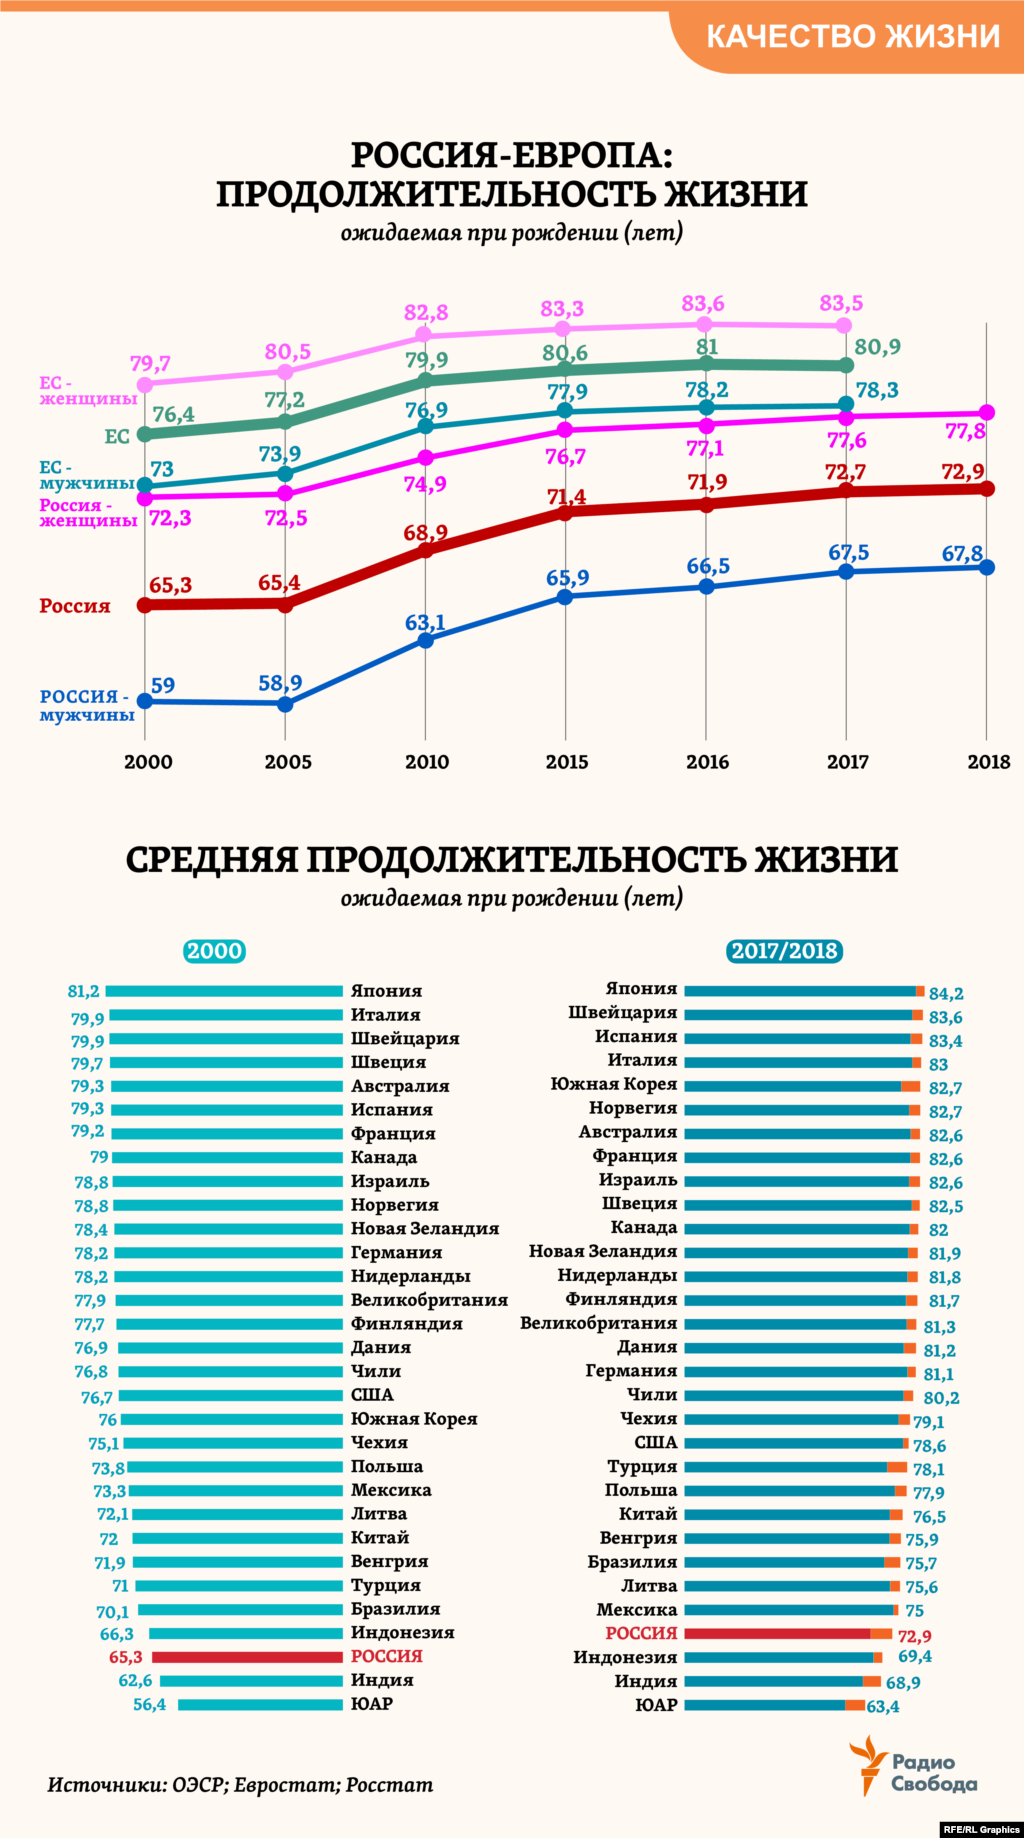 Средняя продолжительность жизни (ожидаемая при рождении человека) в России с 2000 года увеличилась на 7,6 года &ndash; больше, чем в любой другой из примерно 40 стран, охваченных статистикой Организации экономического сотрудничества и развития (ОЭСР). В 2017-м она впервые за десятилетия превысила текущий среднемировой показатель (72 года). При этом ожидаемая продолжительность жизни в России остается на 8 лет меньше средней для 28 стран Евросоюза. &nbsp;&nbsp;